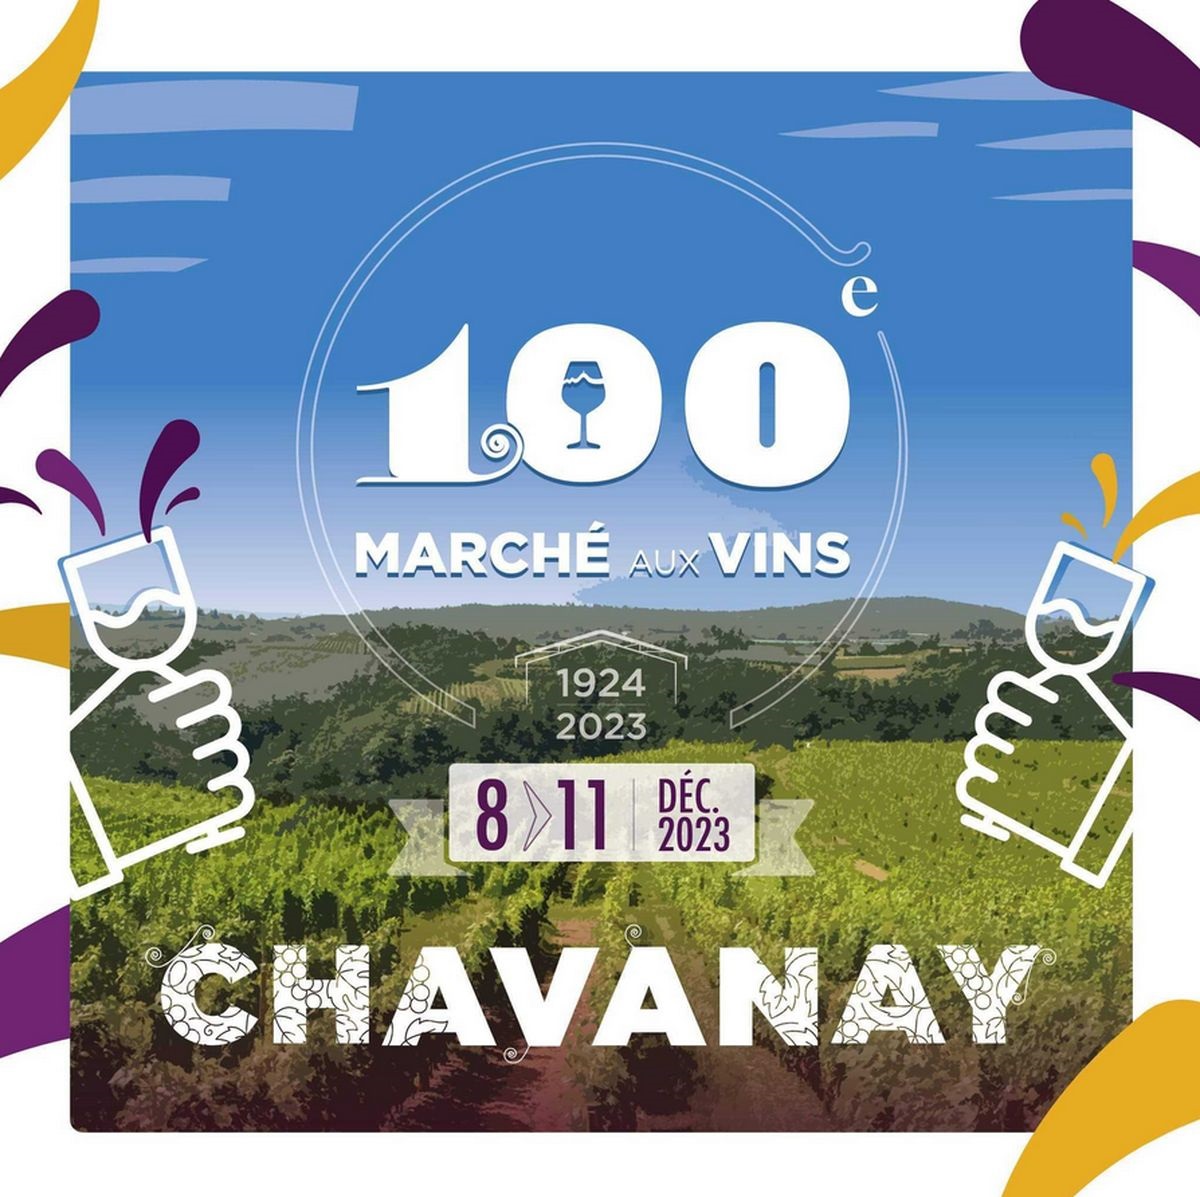 Marché aux vins de Chavanay